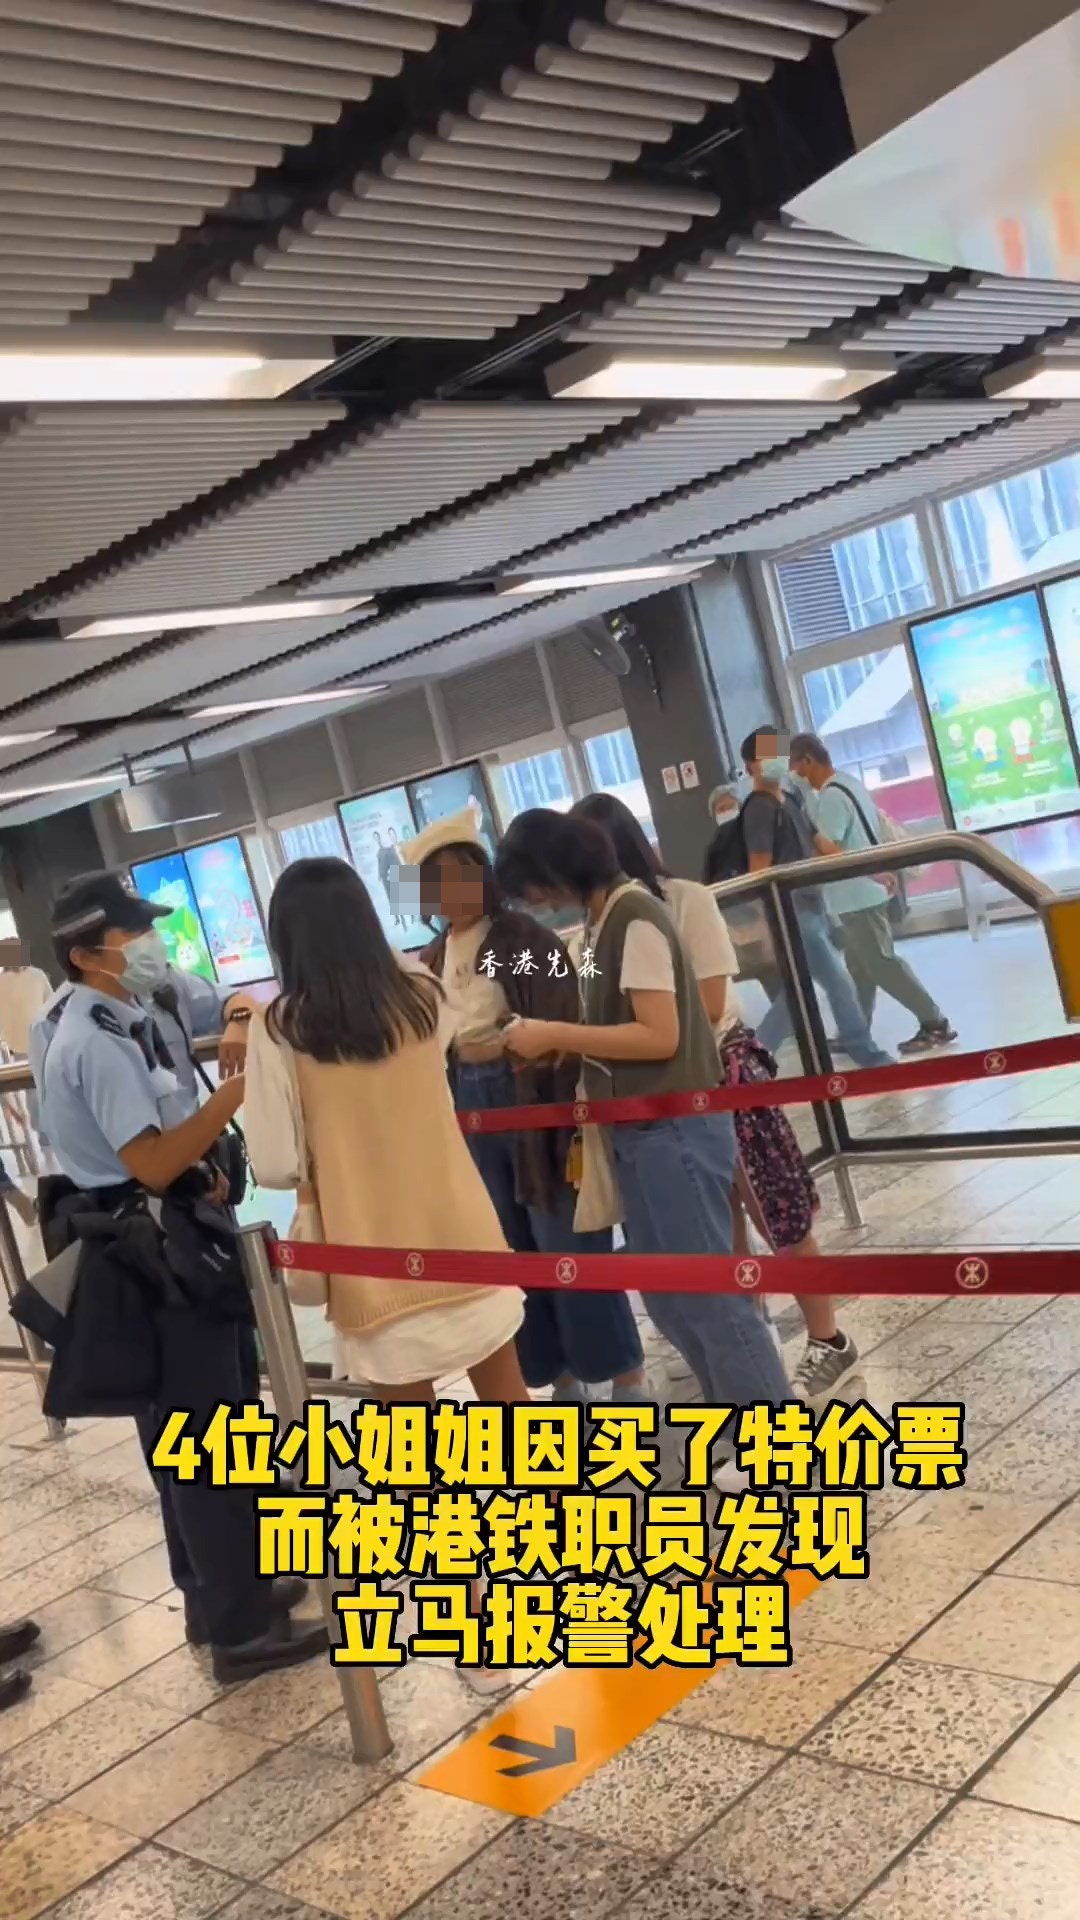 网上近日就流传一段影片，指4名内地女子乘搭港铁时因购买了「特价票（特惠单程票）」，被职员发现并报警处理。（影片截图）